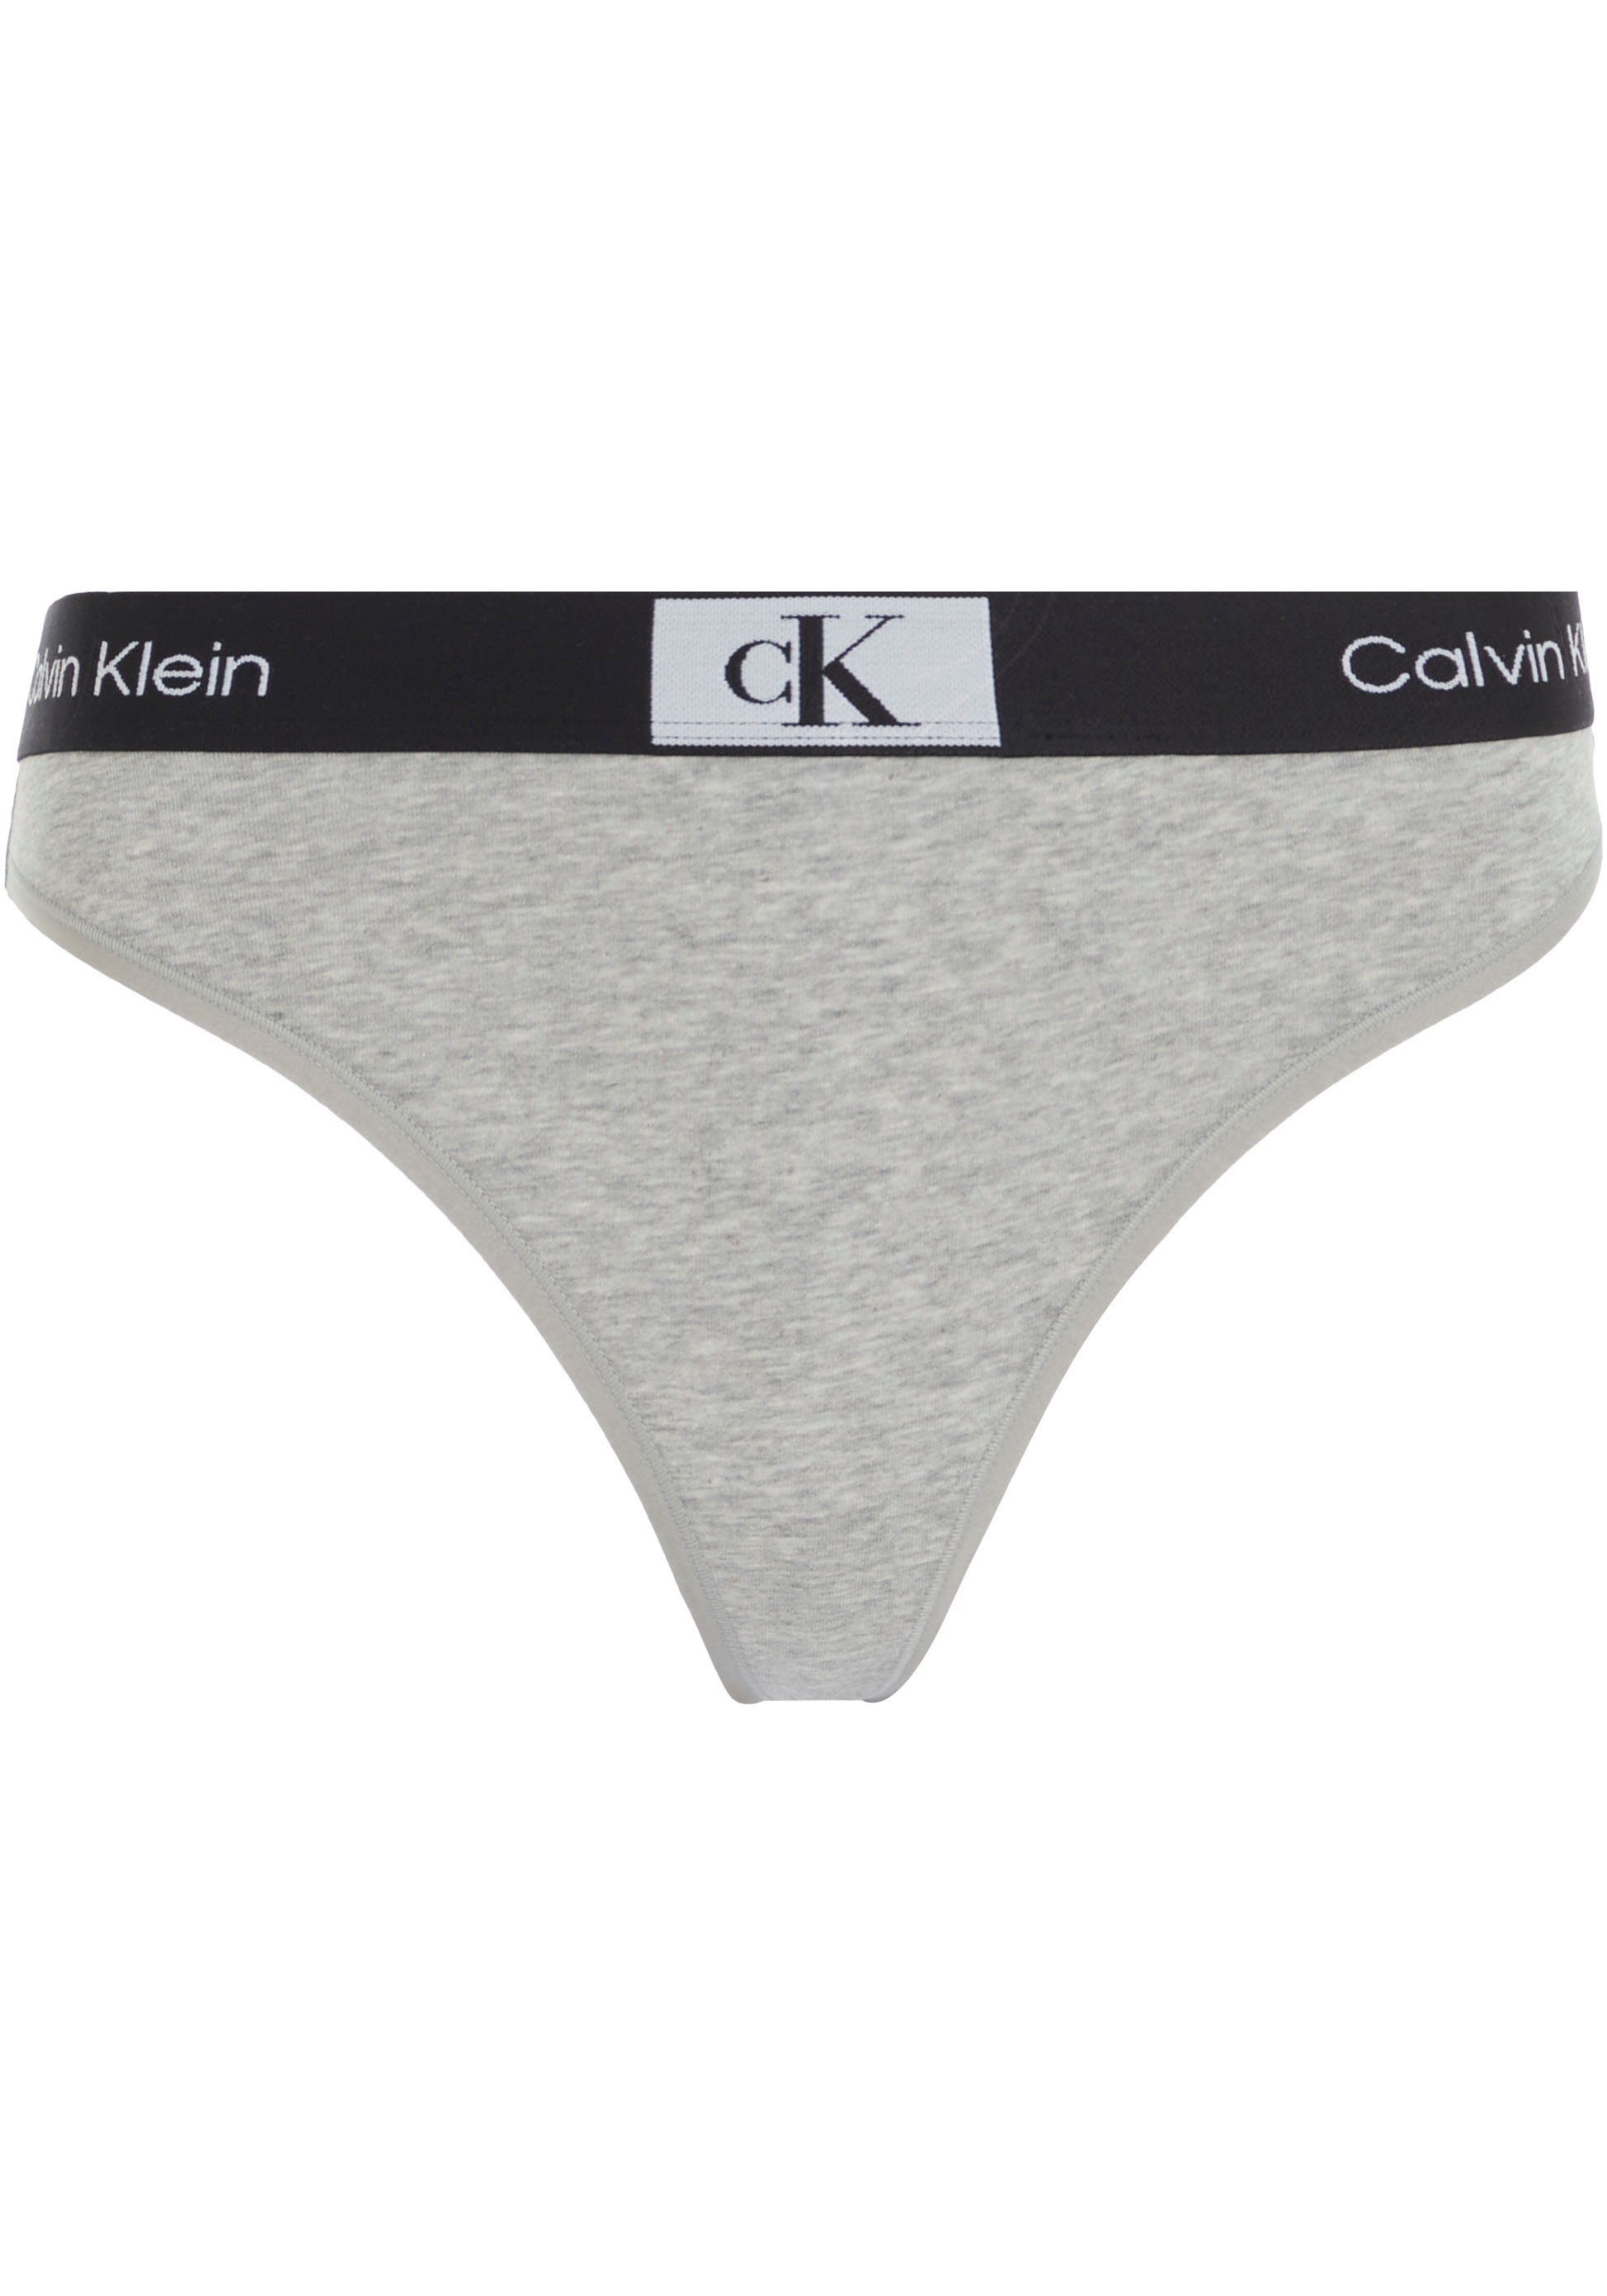 MODERN GREY-HEATHER mit Klein T-String THONG Calvin Underwear Alloverprint